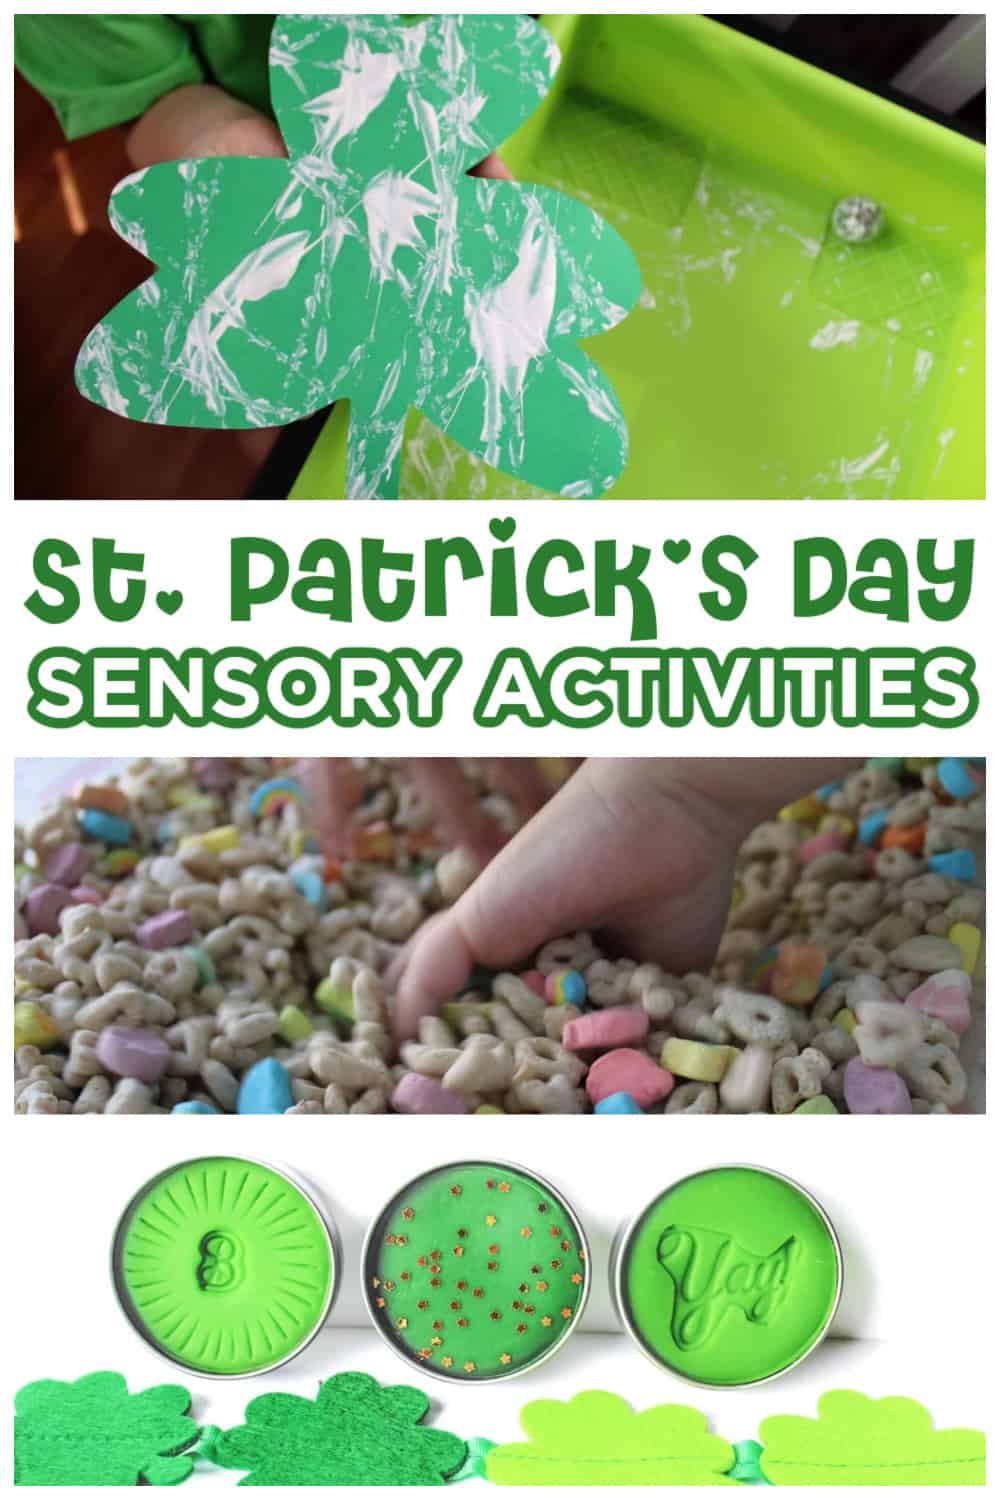 St. Patrick's Day Sensory Kit